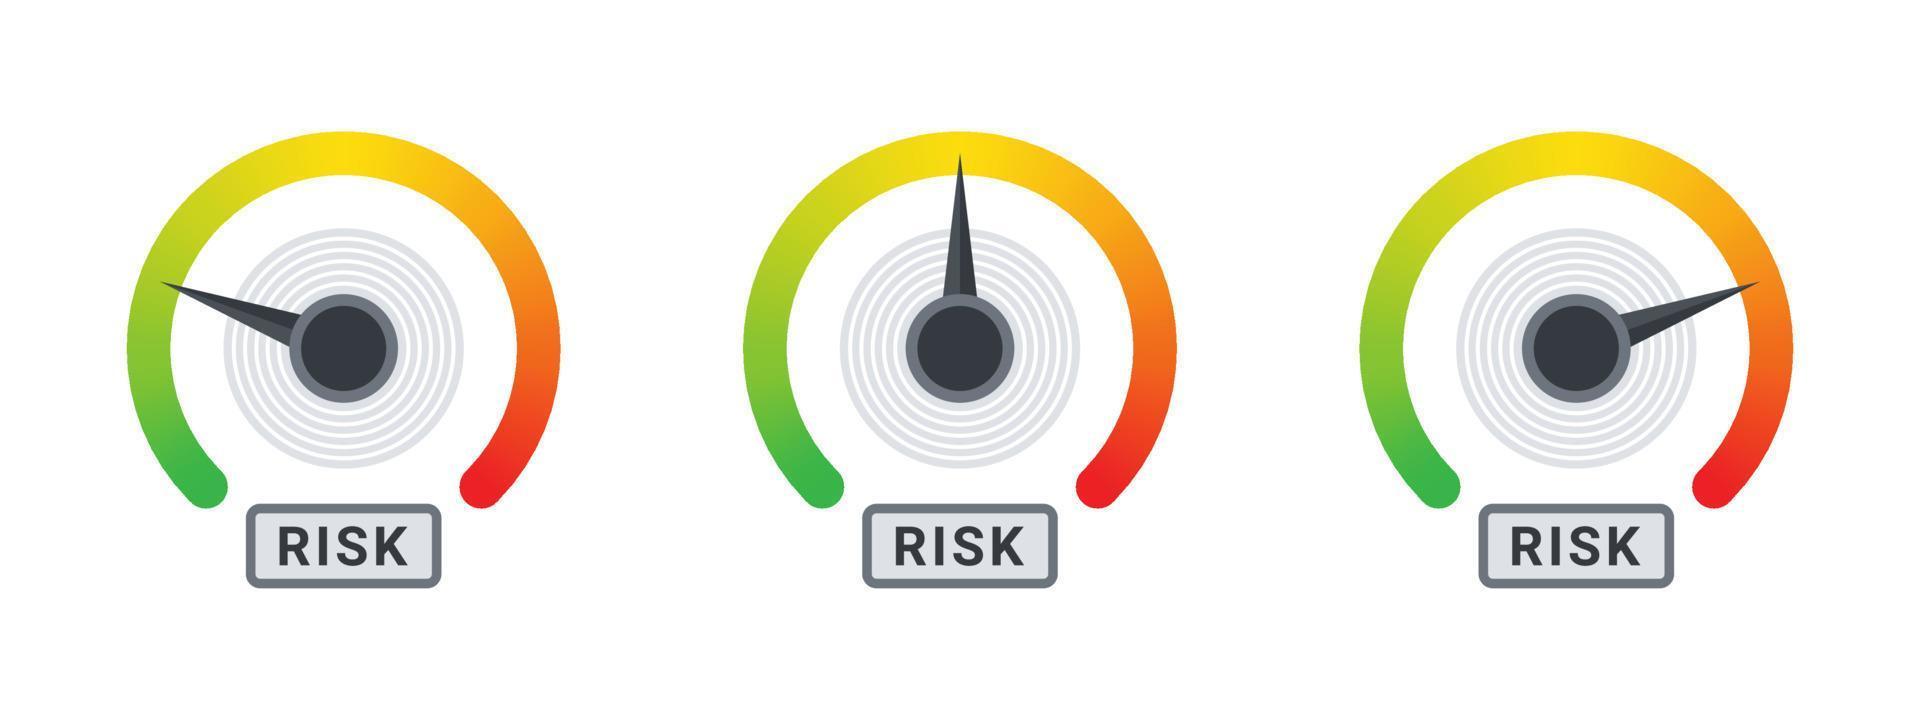 medidor de riesgo iconos de riesgo. concepto de signos de medidor. concepto de escala de alto riesgo. ilustración vectorial vector